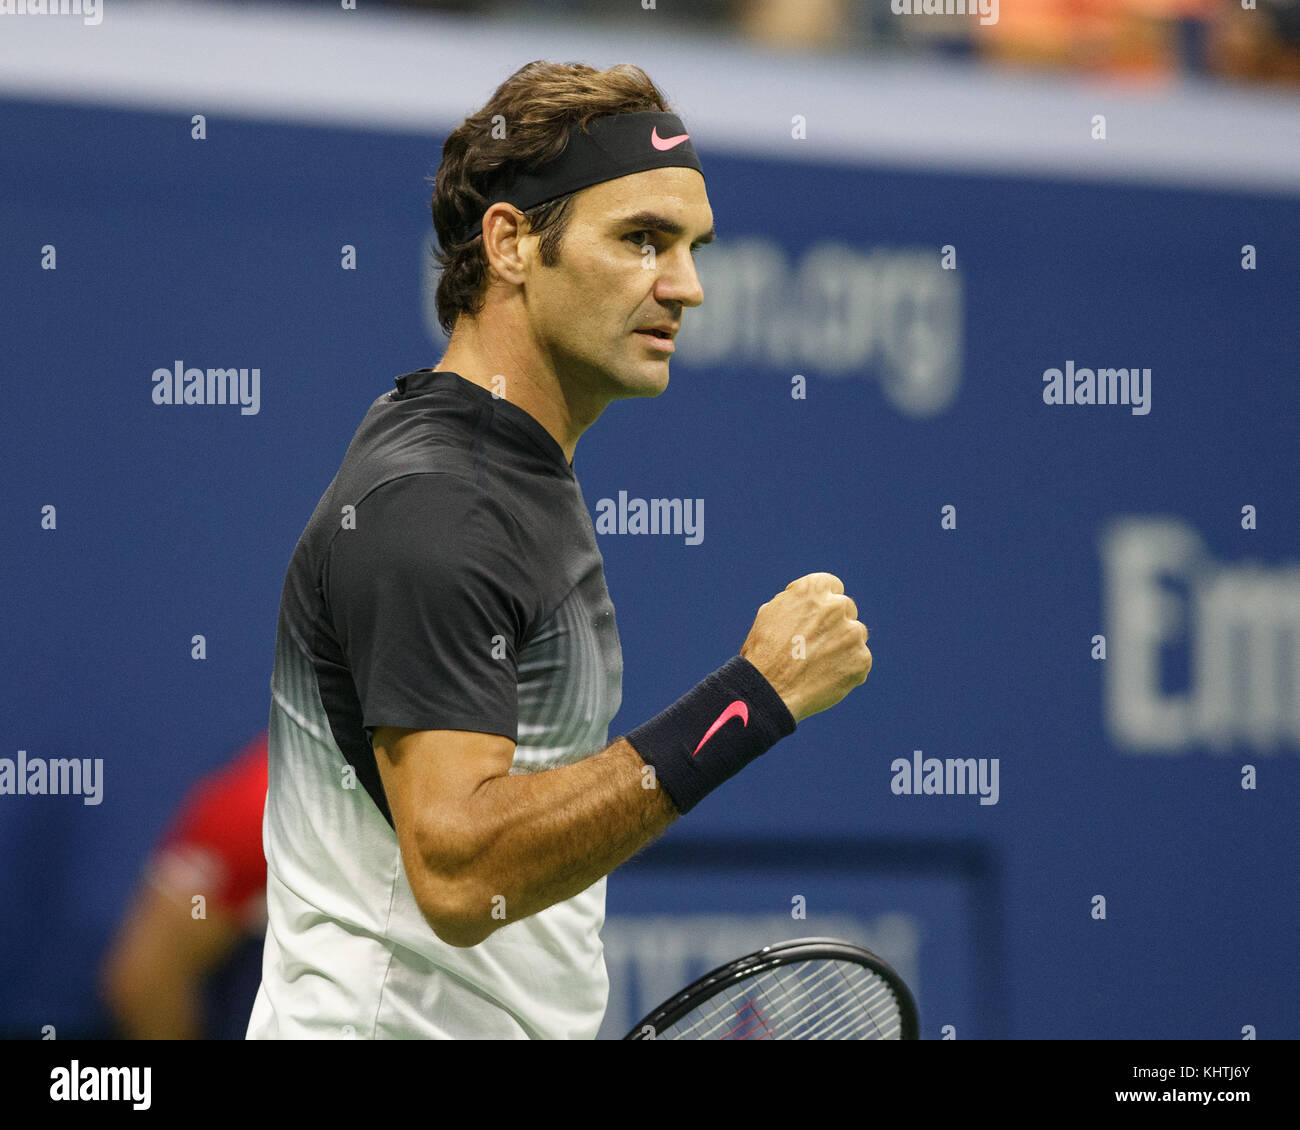 Le joueur de tennis suisse Roger Federer (SUI) célèbre à l'US Open Tennis Championship 2017, new york city, New York State, United States. Banque D'Images